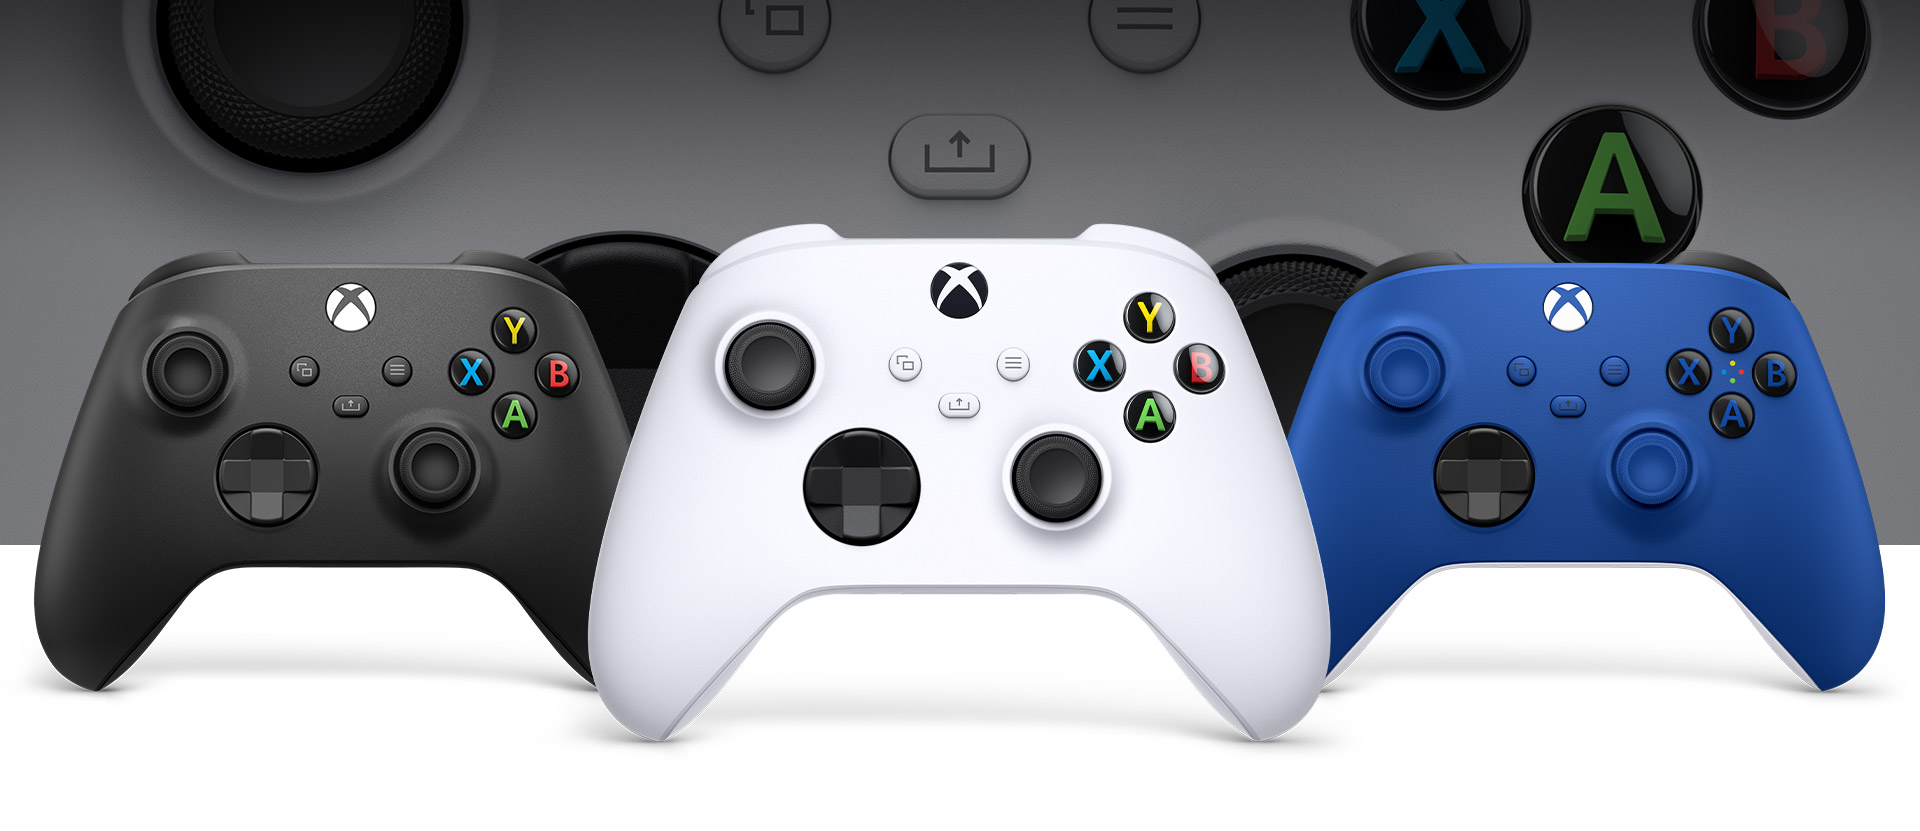 正面にロボット ホワイトの Xbox コントローラー、左にカーボン ブラックの Xbox コントローラー、右にショック ブルーの Xbox コントローラー